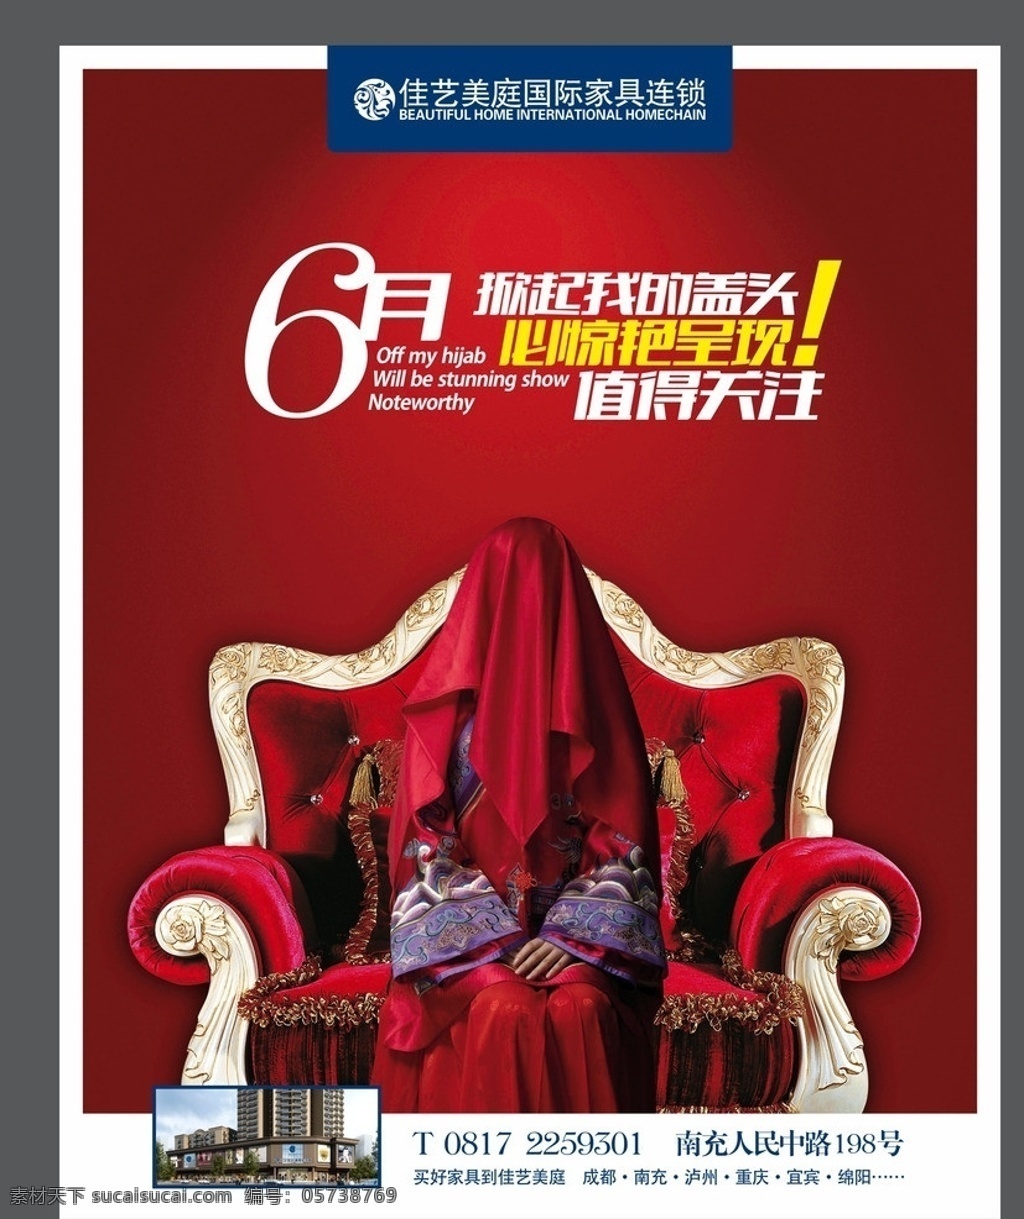 家具 商场 宣传海报 欧式 红盖头 红色背景 字体设计 沙发 矢量